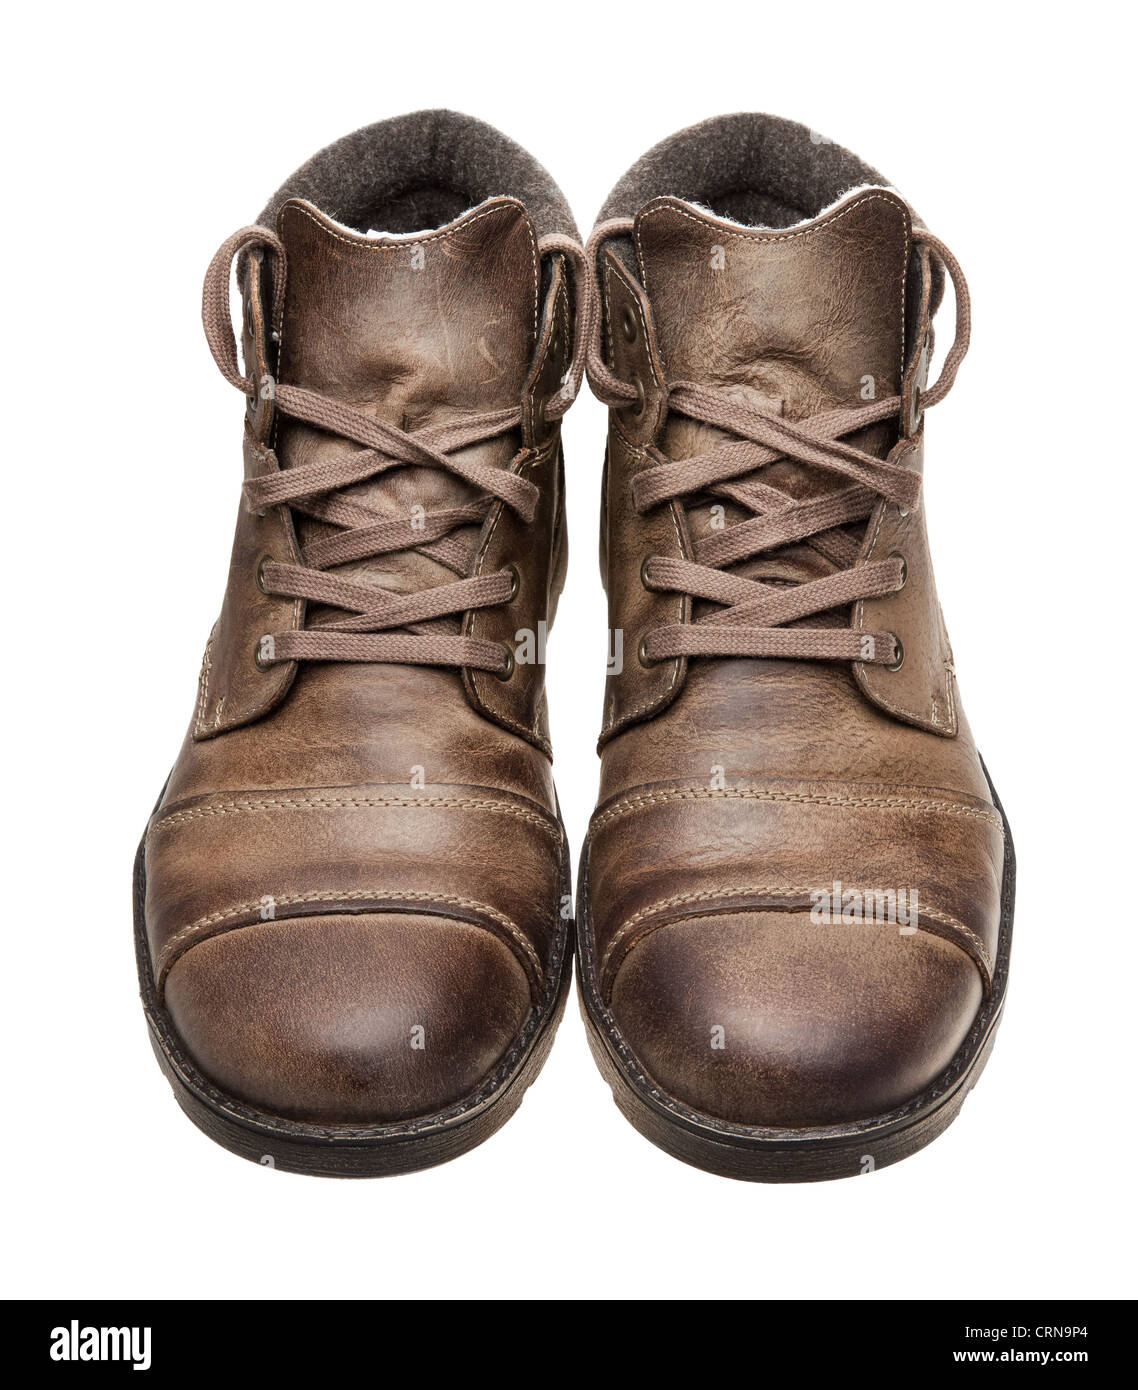 Paire de chaussures en cuir brun. Banque D'Images